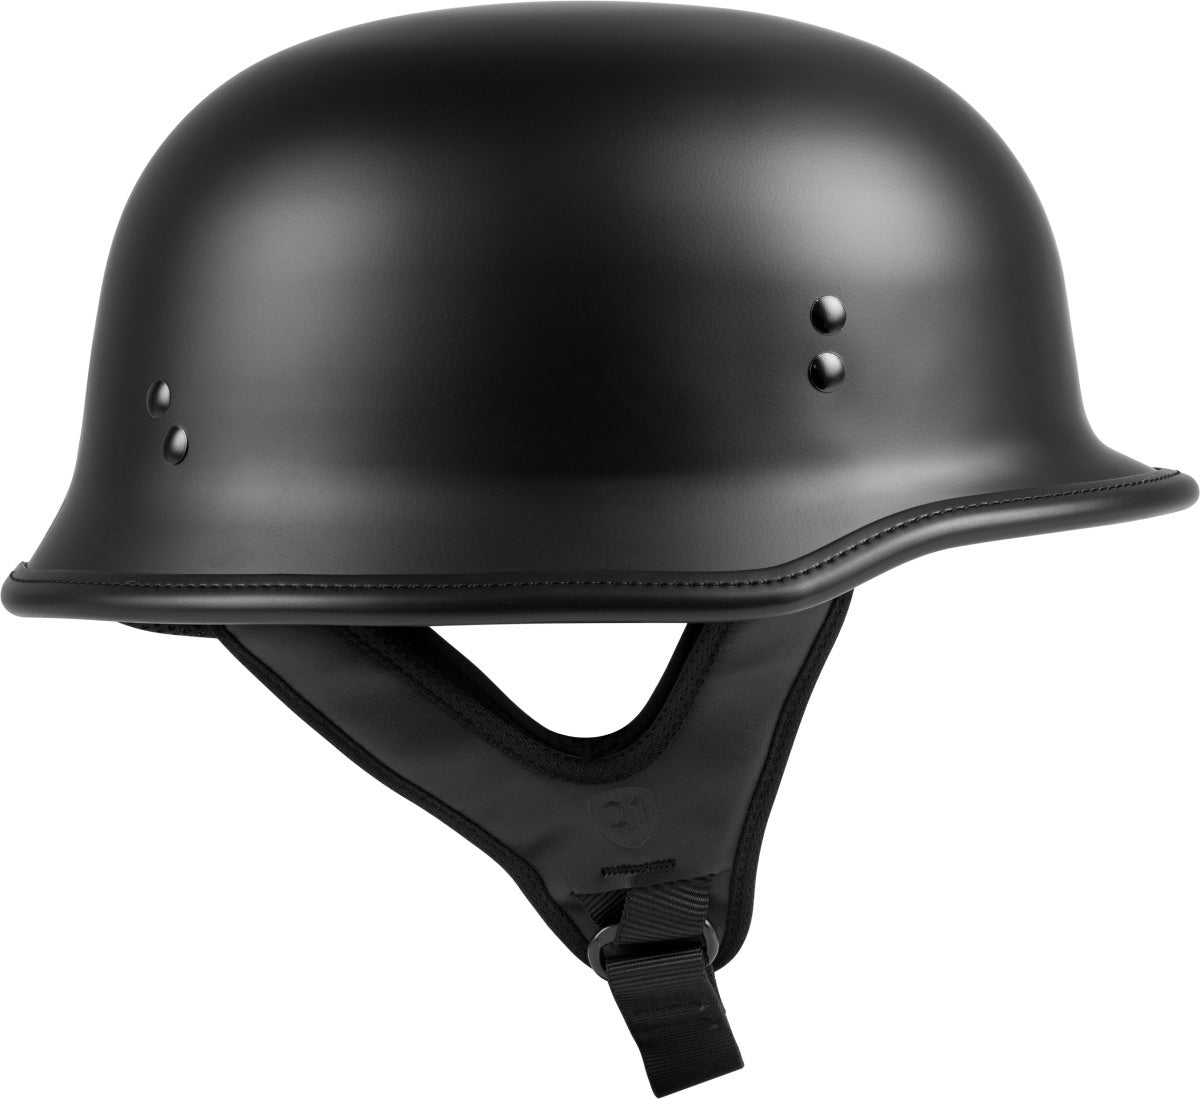 Highway 21 9MM Matte Black German Beanie Helmet